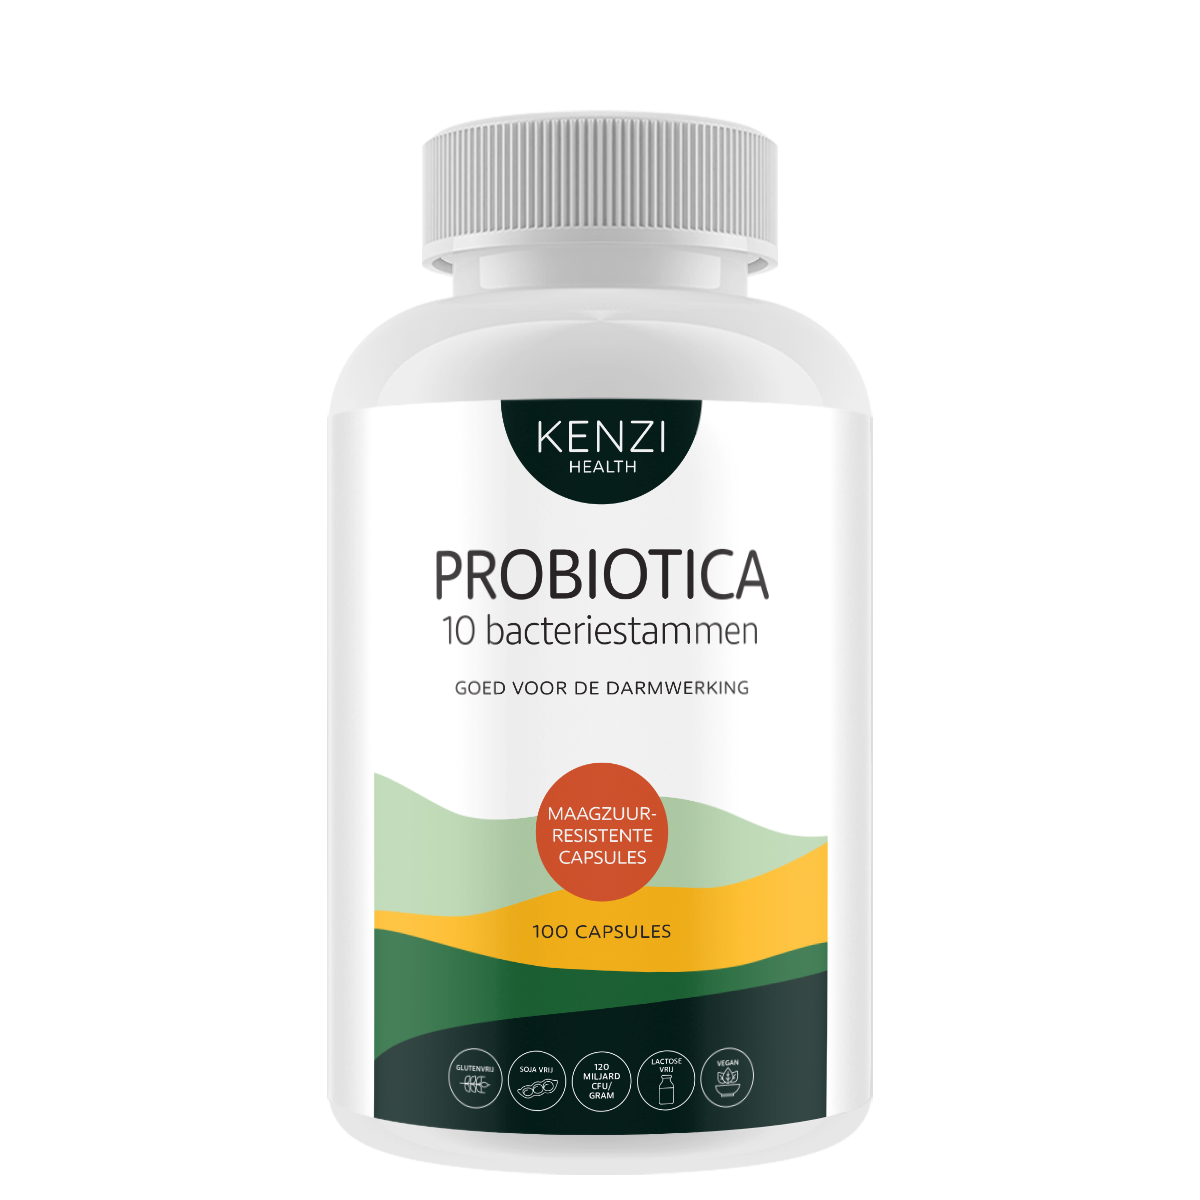 drinken fiets Auroch Probiotica 9,6 Miljard CFU - 10 bacteriestammen (Kenzi) 100 capsules -  Vegan kopen? -